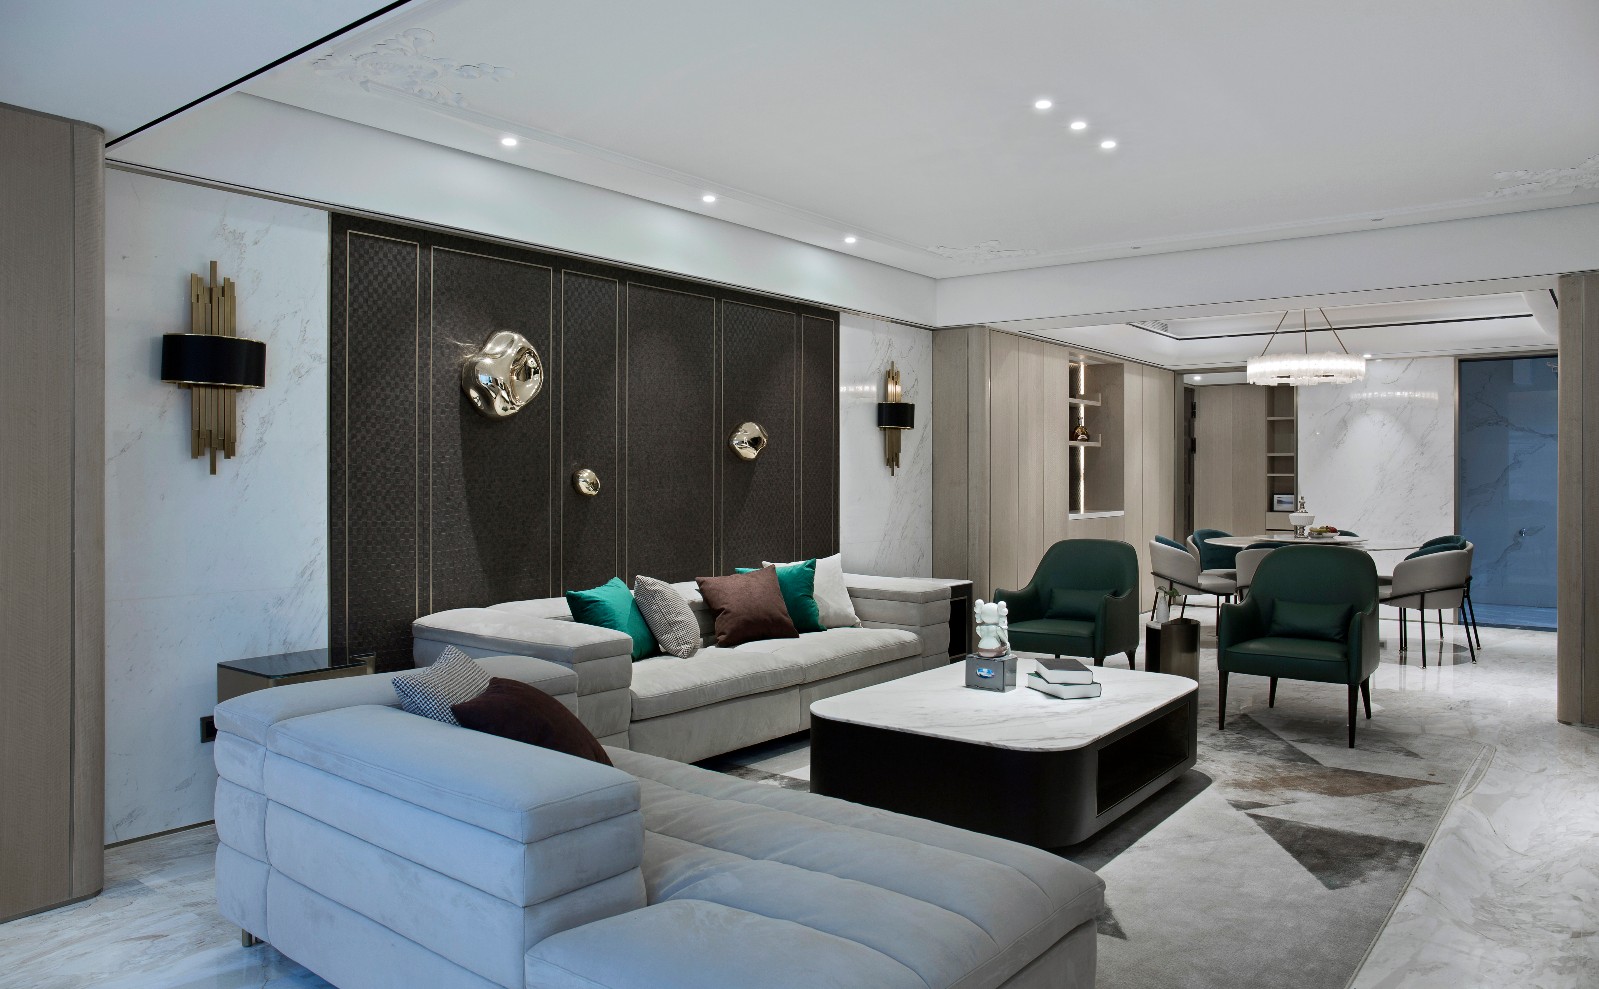 客厅沙发3装修效果图魔.登|诺卡空间设计混搭客厅设计图片赏析